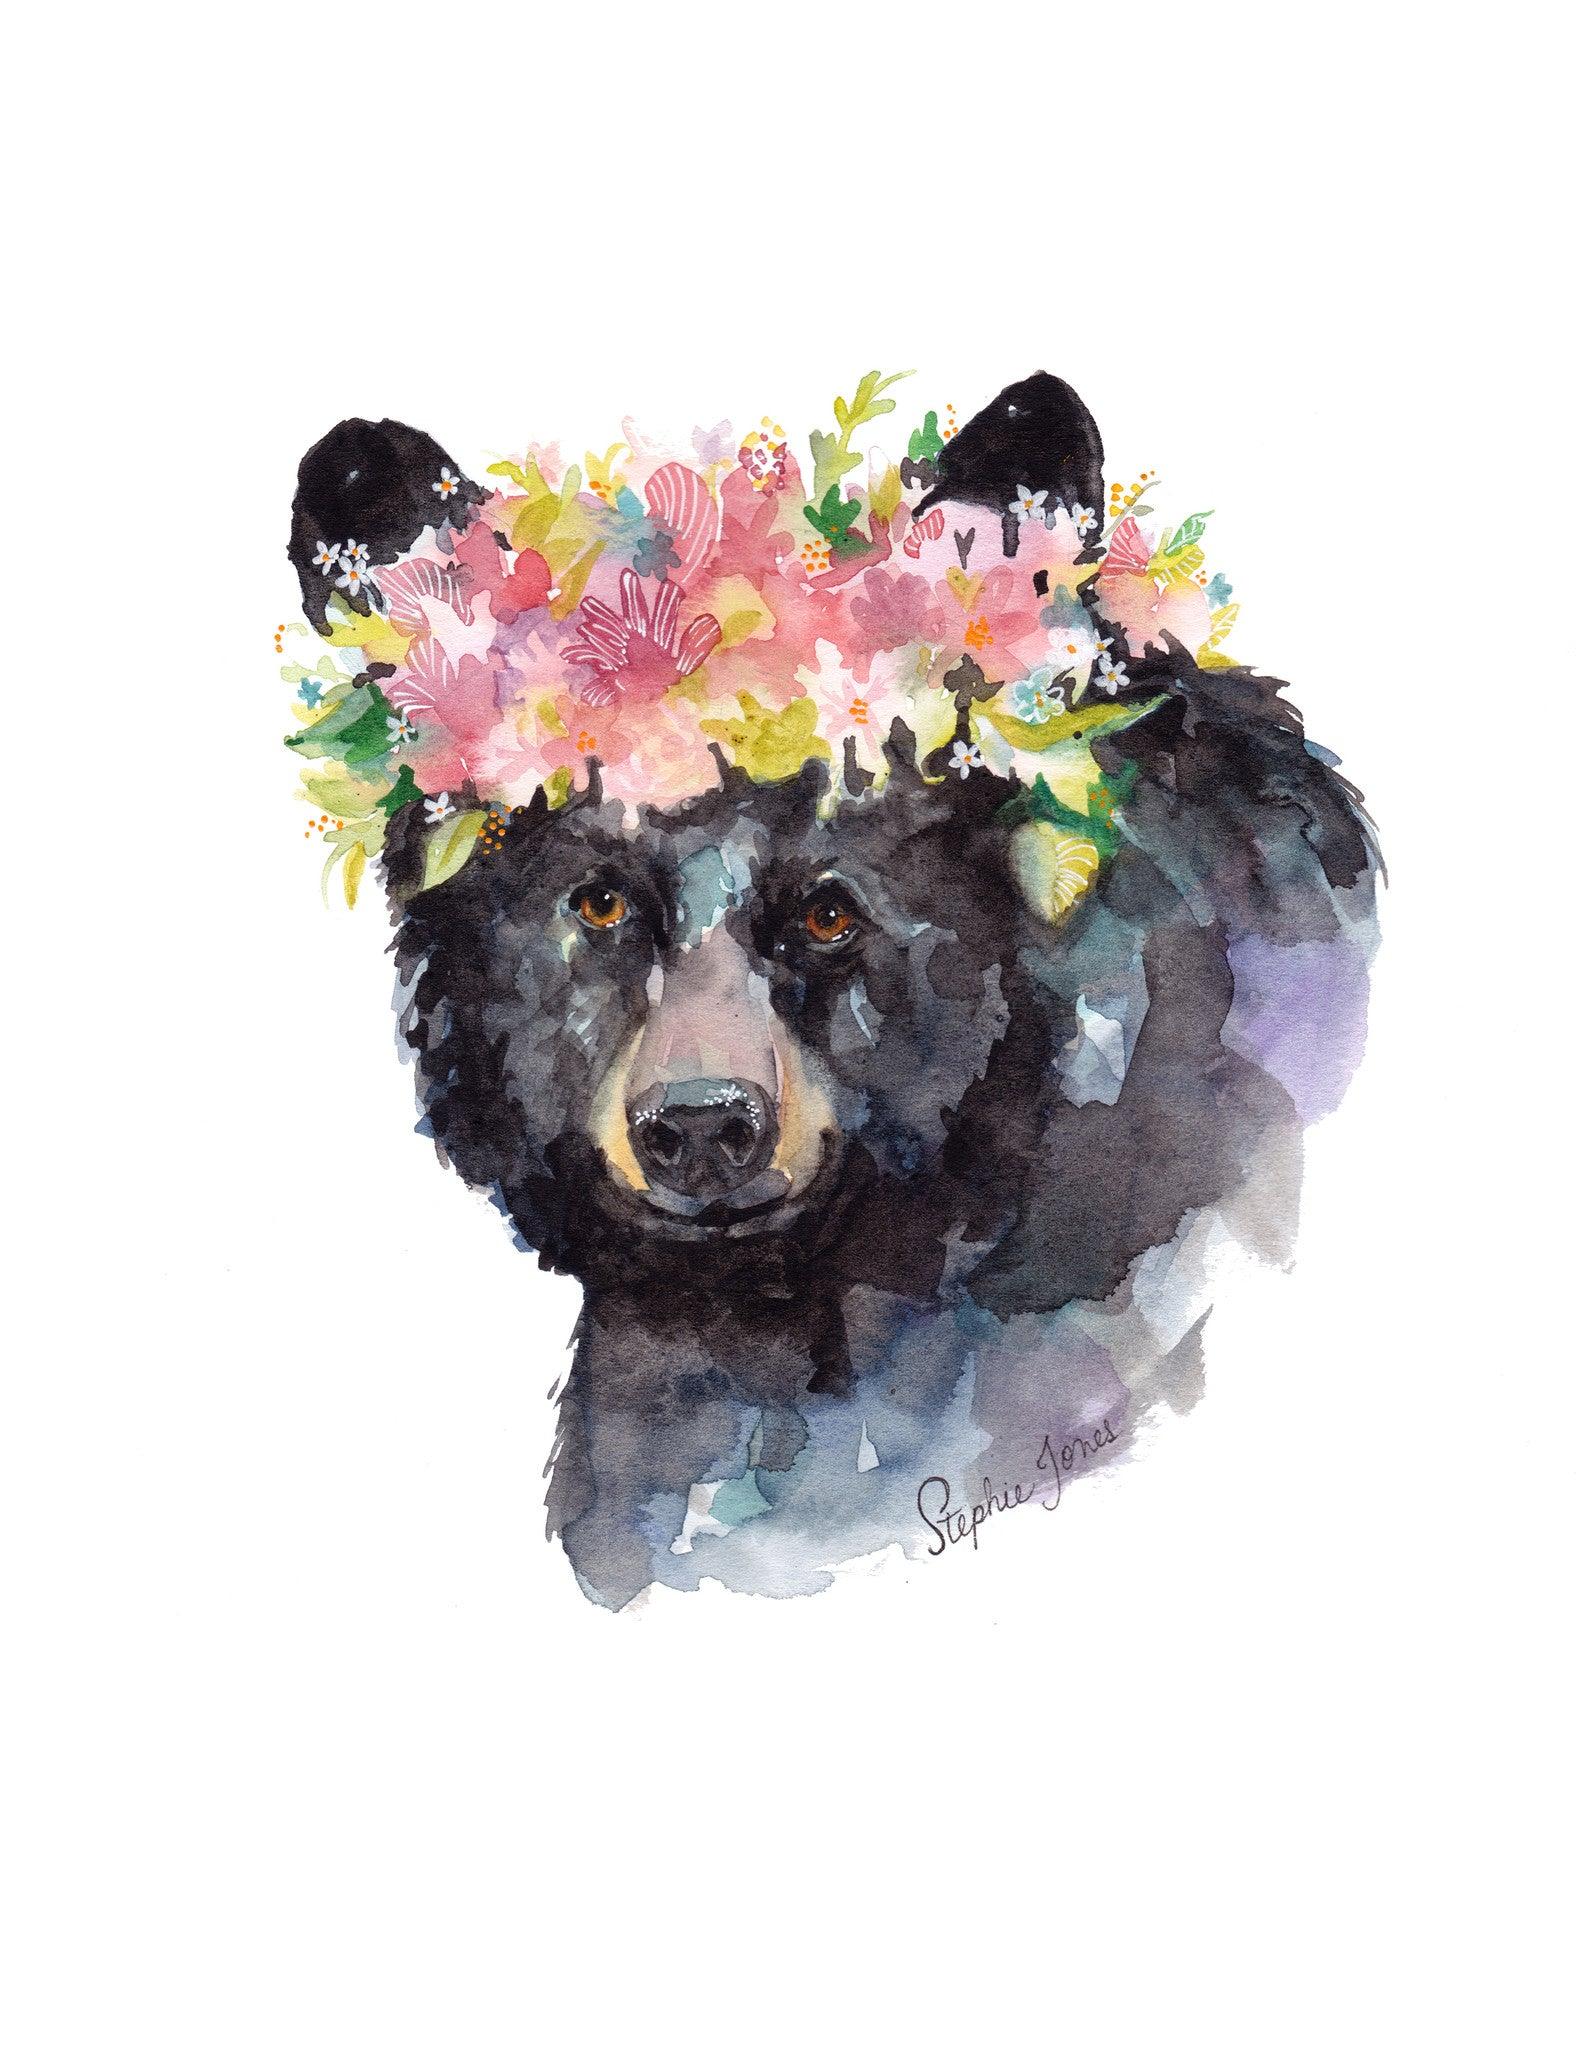 Mama Bear, Original Painting painting by Virginia Beach Artist Stephie Jones